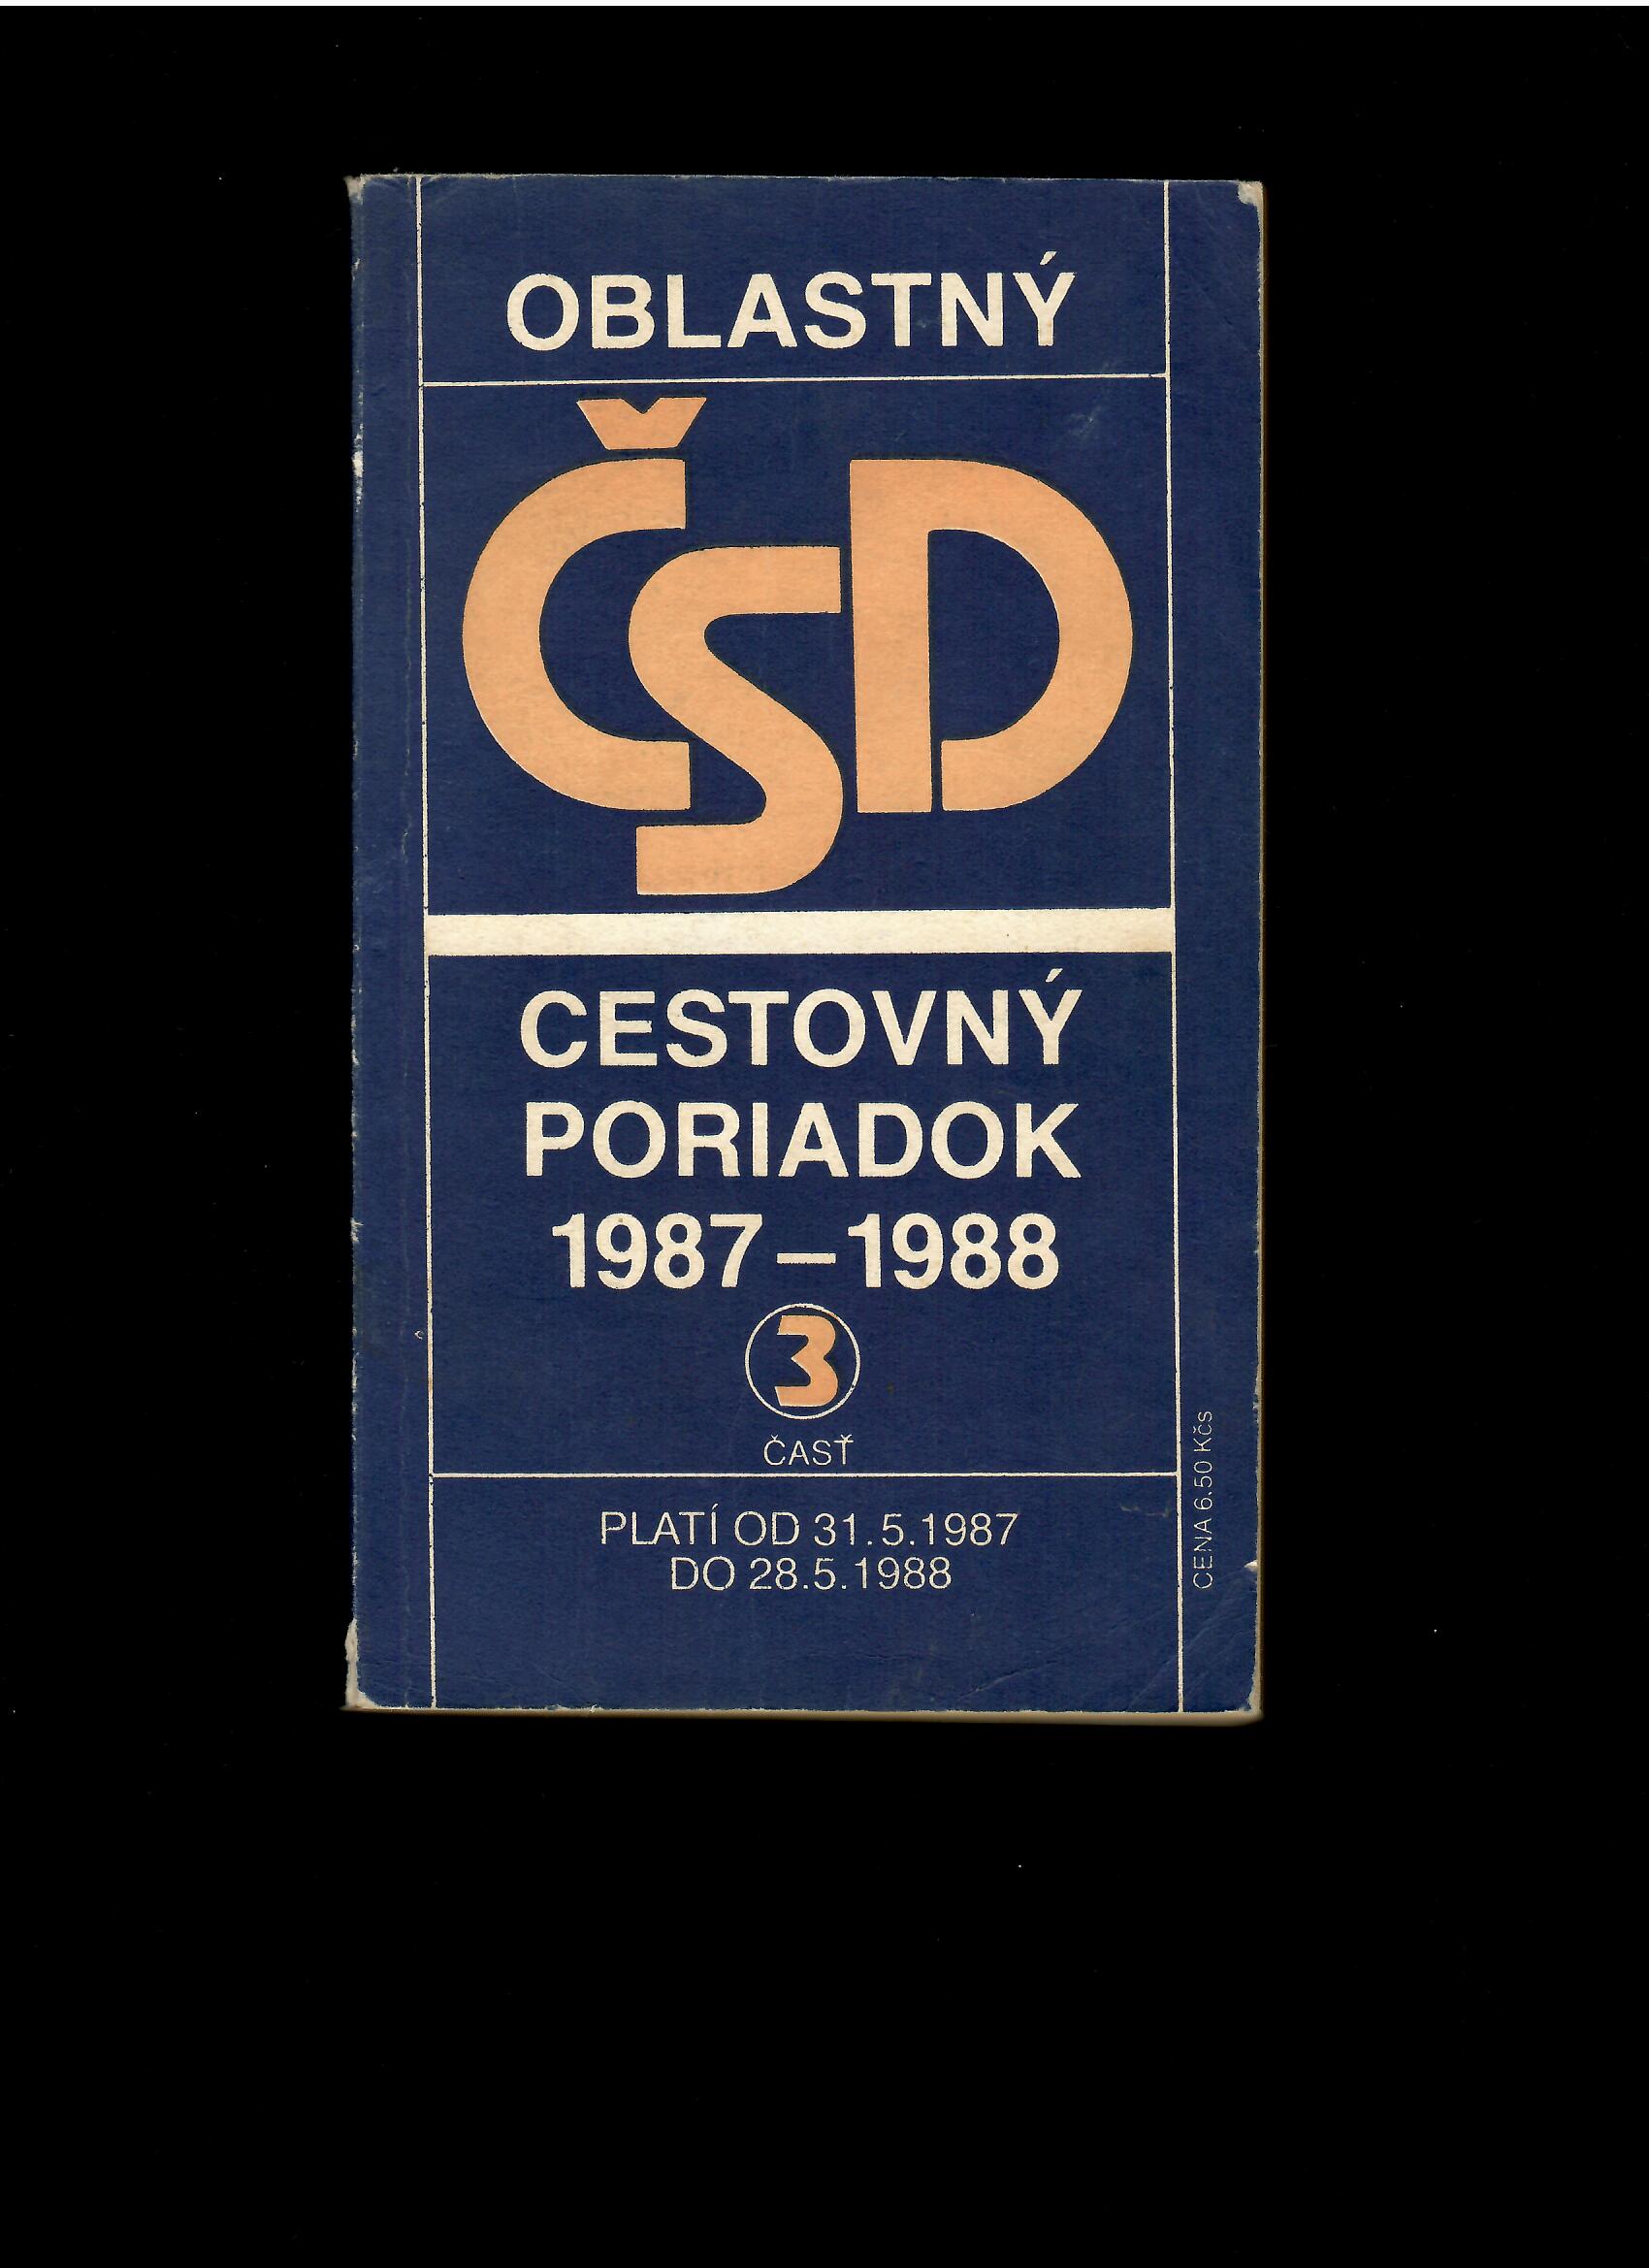 Oblastný cestovný poriadok ČSD 1987-1988